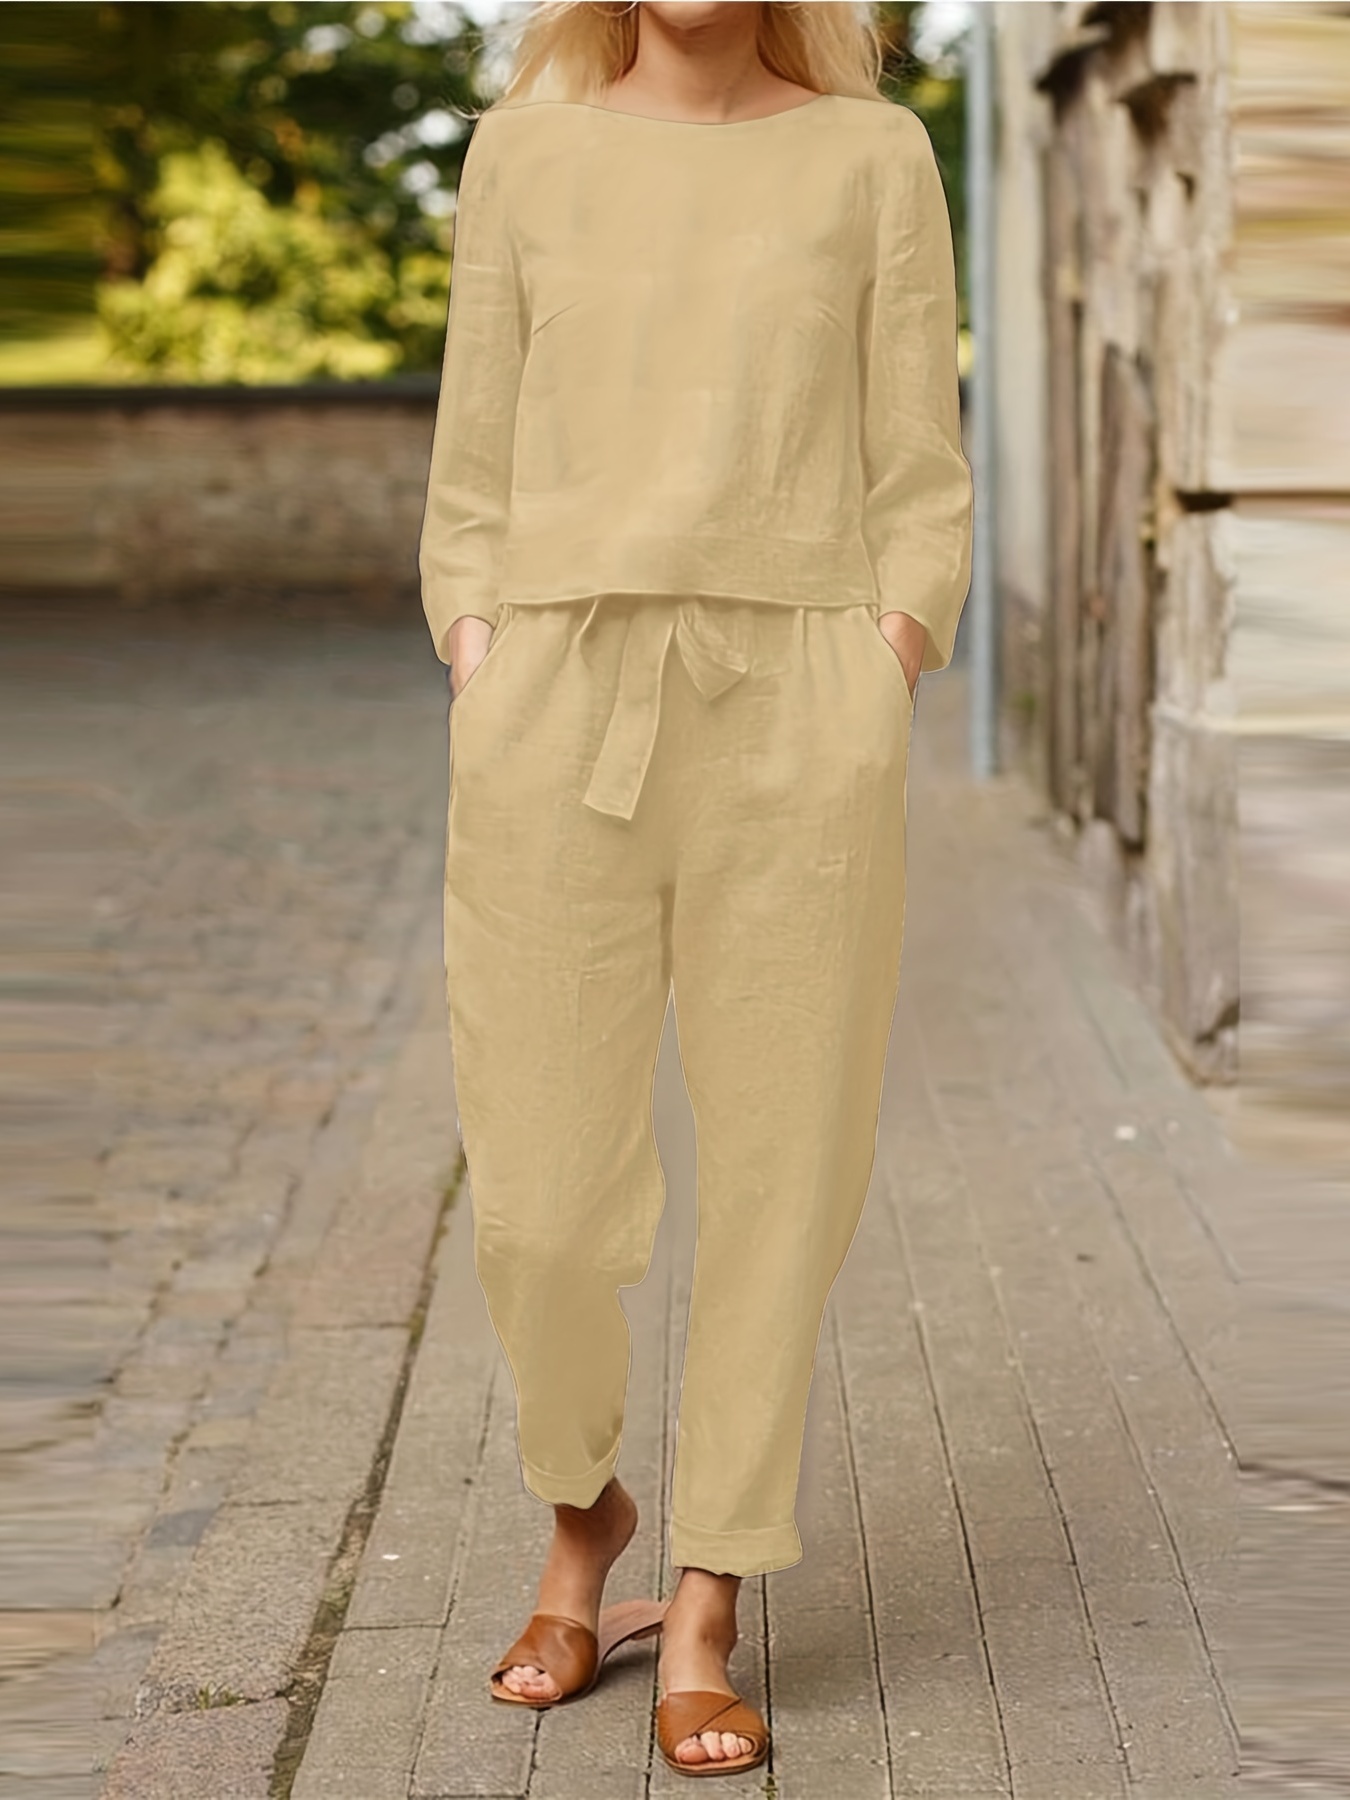 Casual Linen Pants Suit, 2-piece Outfit for Women, Plus Size Linen